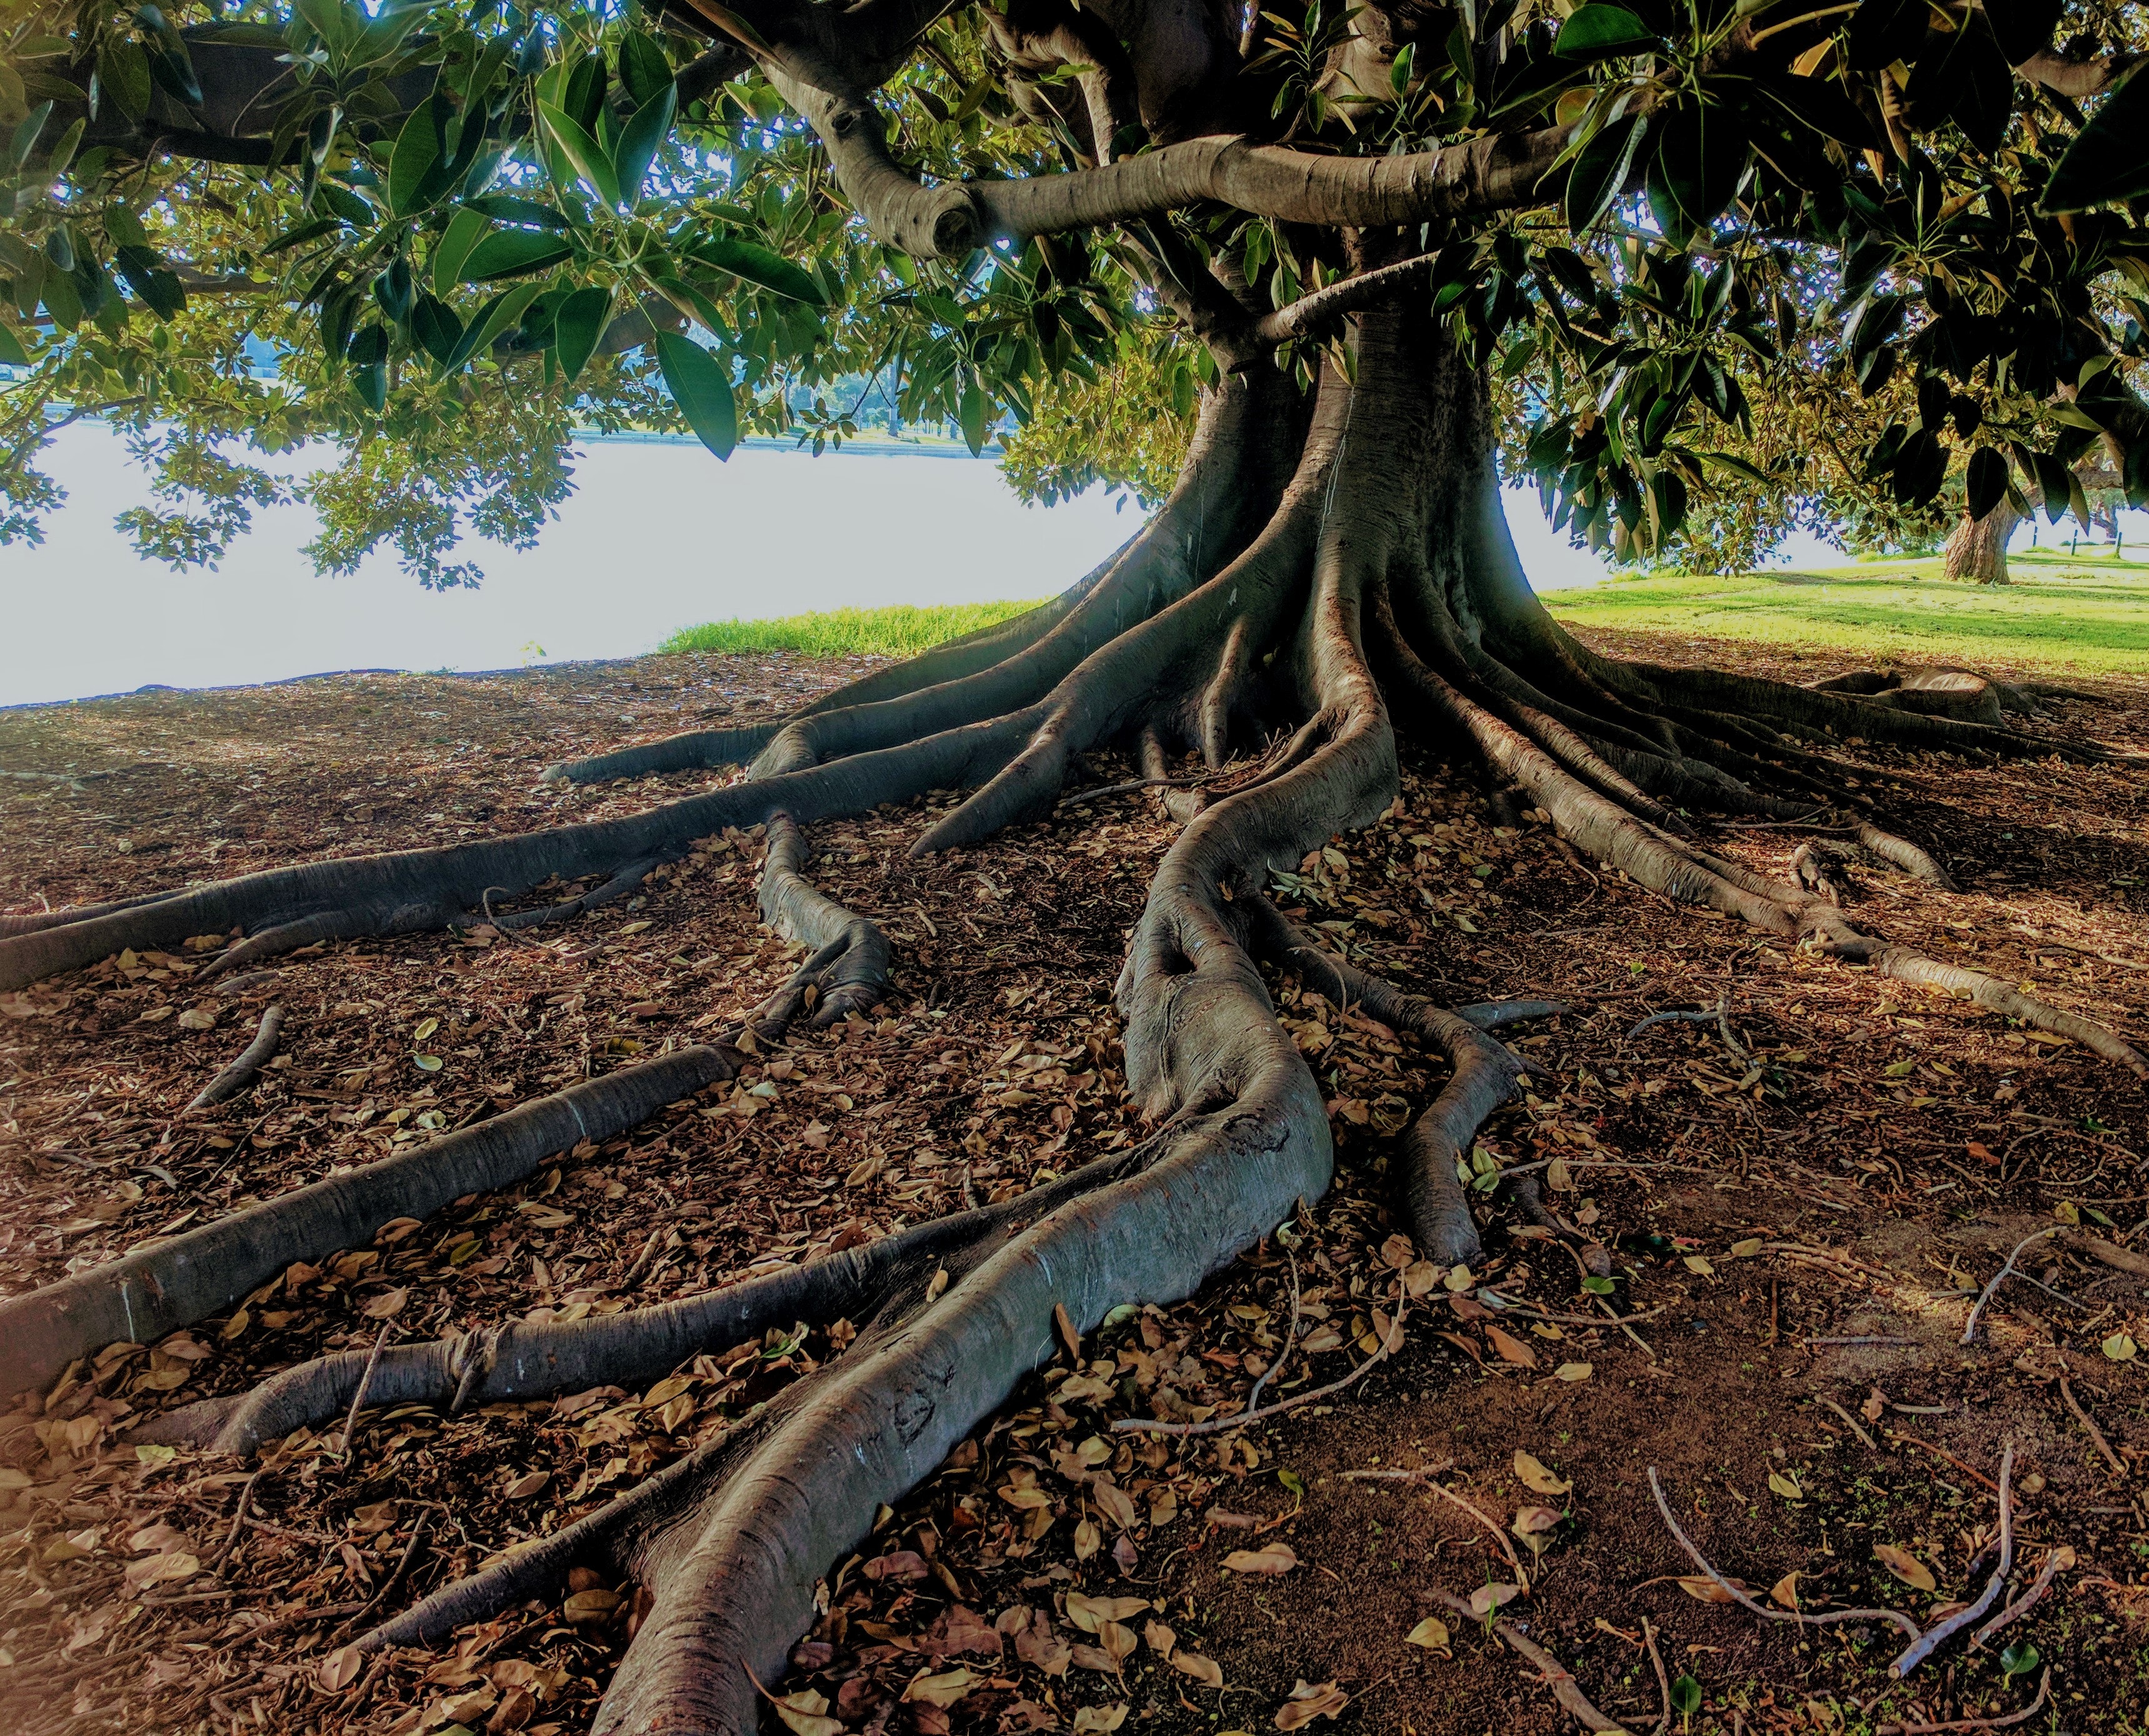 Hero Image: Tree with roots, Foto von Daniel Watson von Pexels